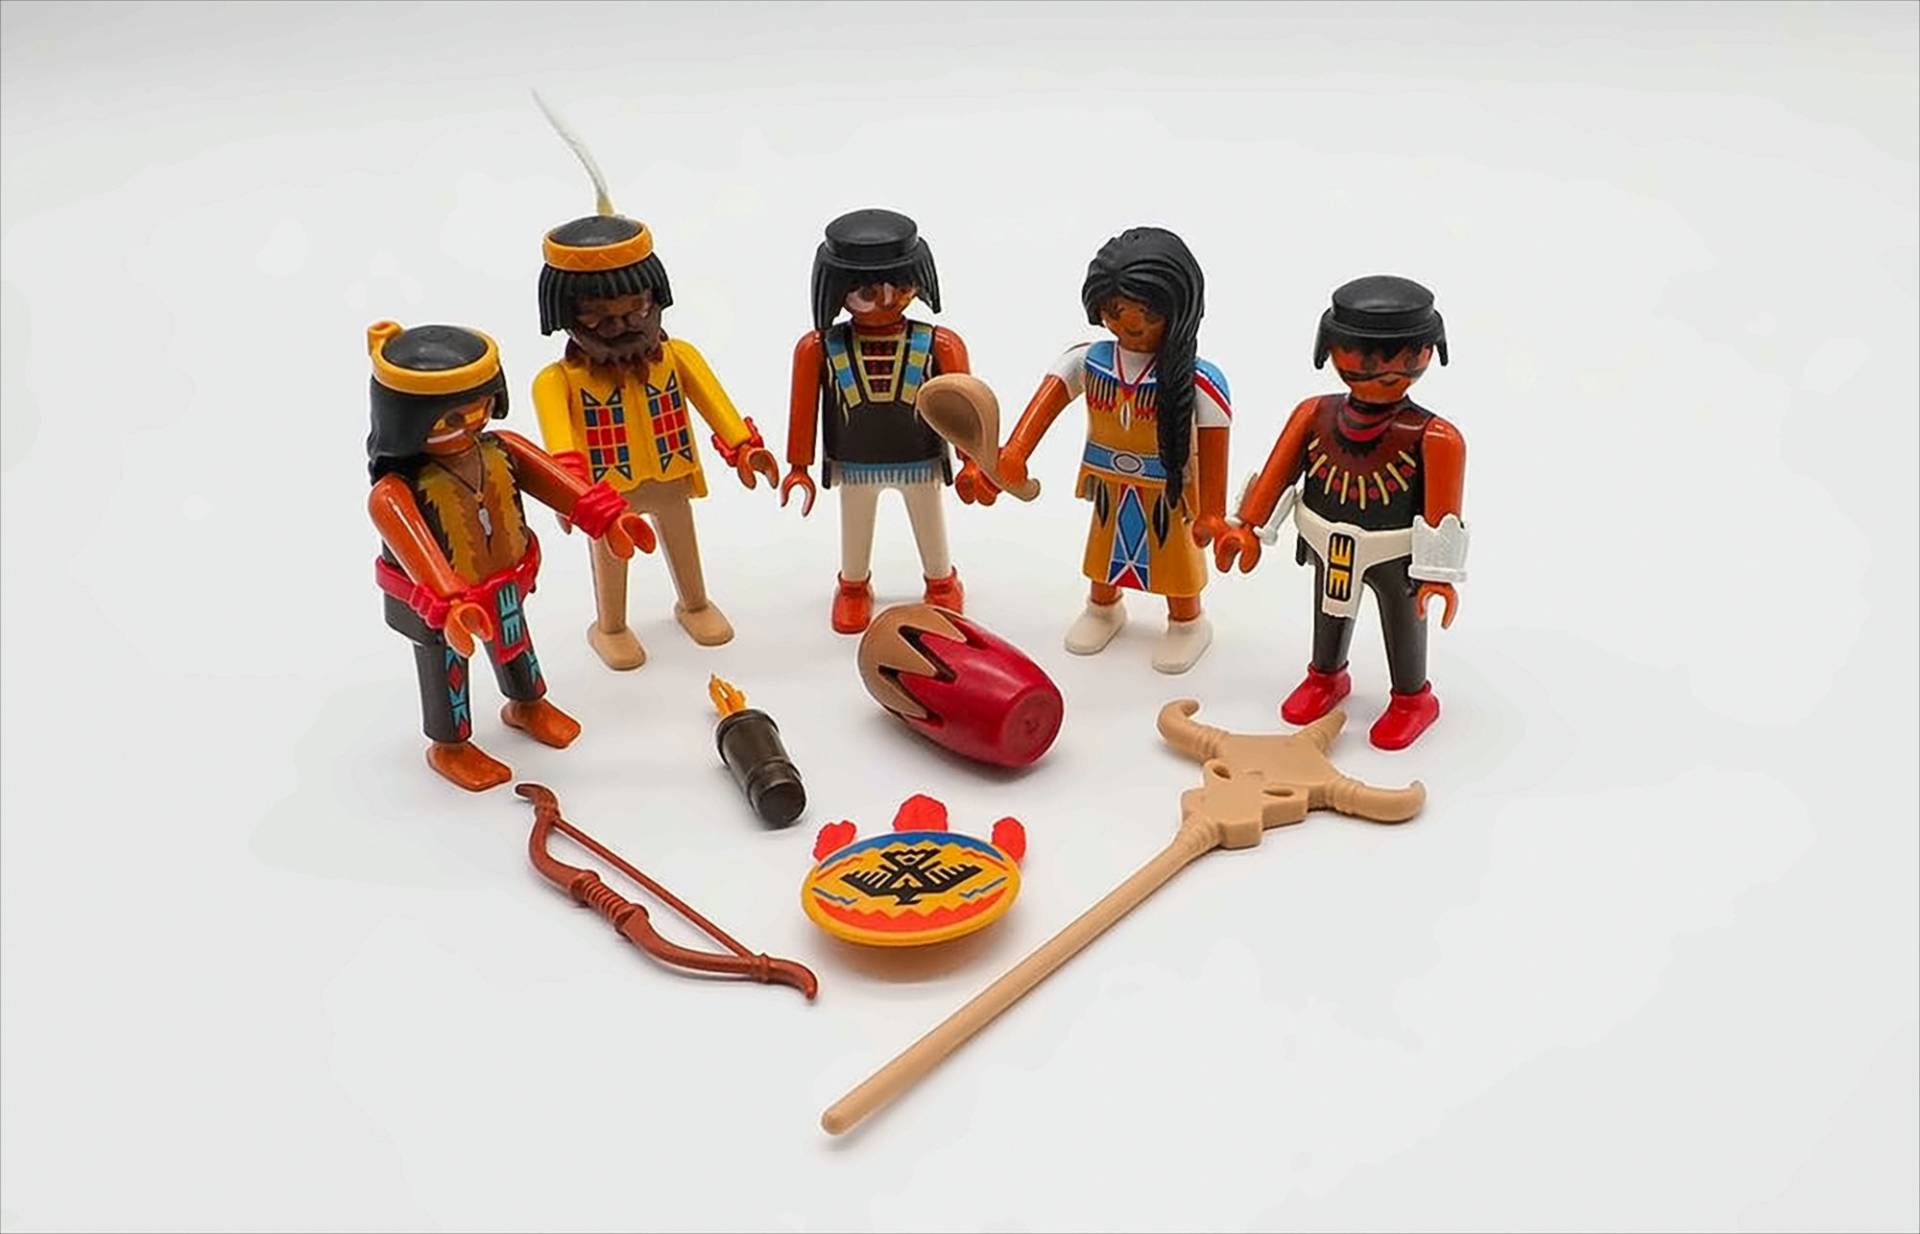 Playmobil Indianer-Set von geobra Brandstätter Stiftung & Co. KG